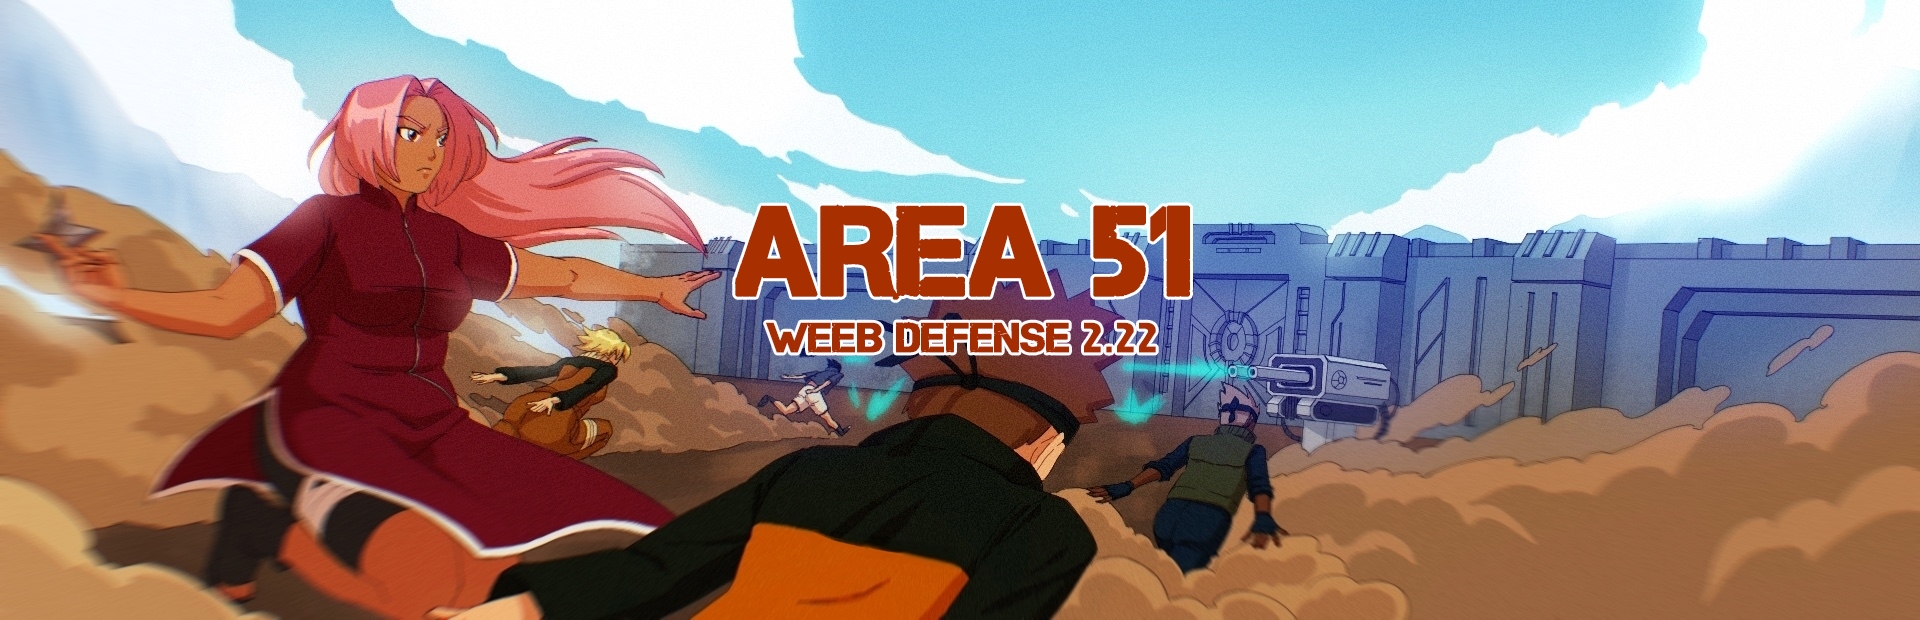 Area 51 Weeb Defense 2.22